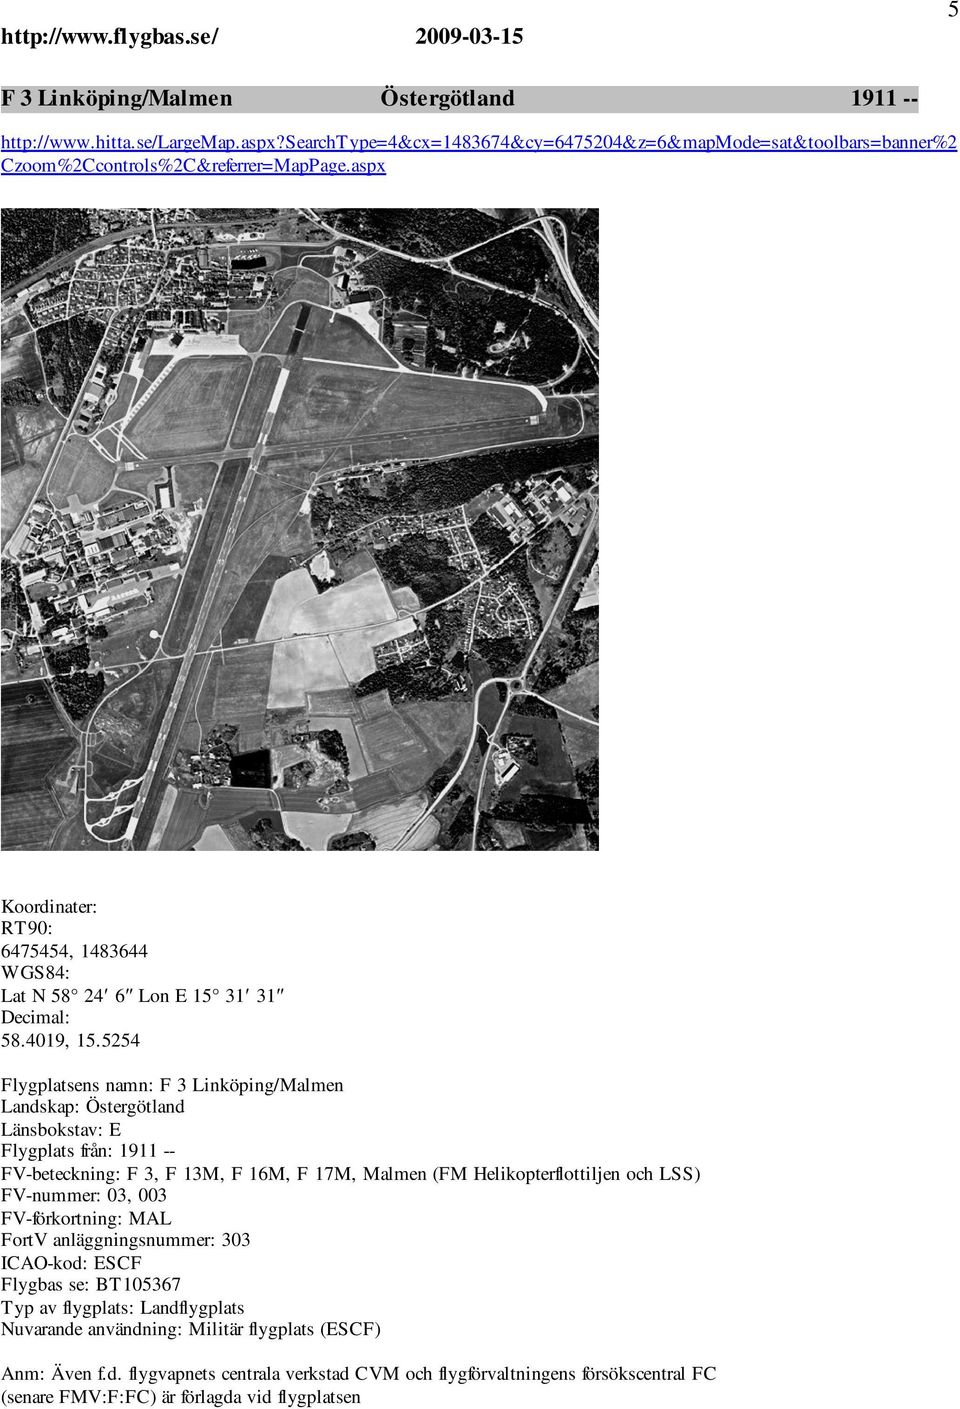 5254 Flygplatsens namn: F 3 Linköping/Malmen Landskap: Östergötland Länsbokstav: E Flygplats från: 1911 -- FV-beteckning: F 3, F 13M, F 16M, F 17M, Malmen (FM